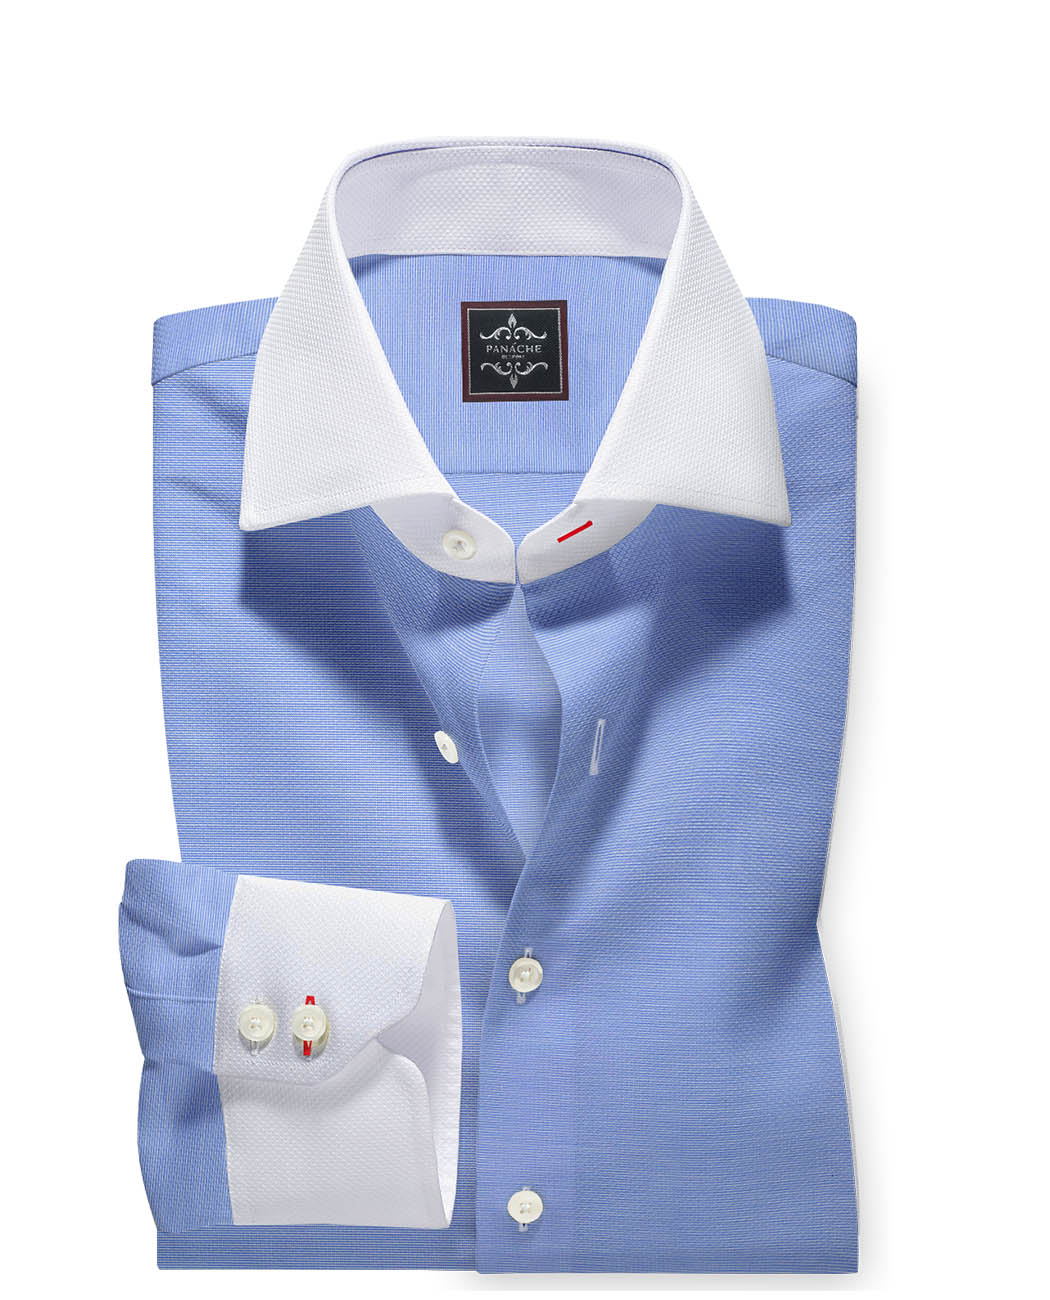 men formal shirts - SKY BLUE